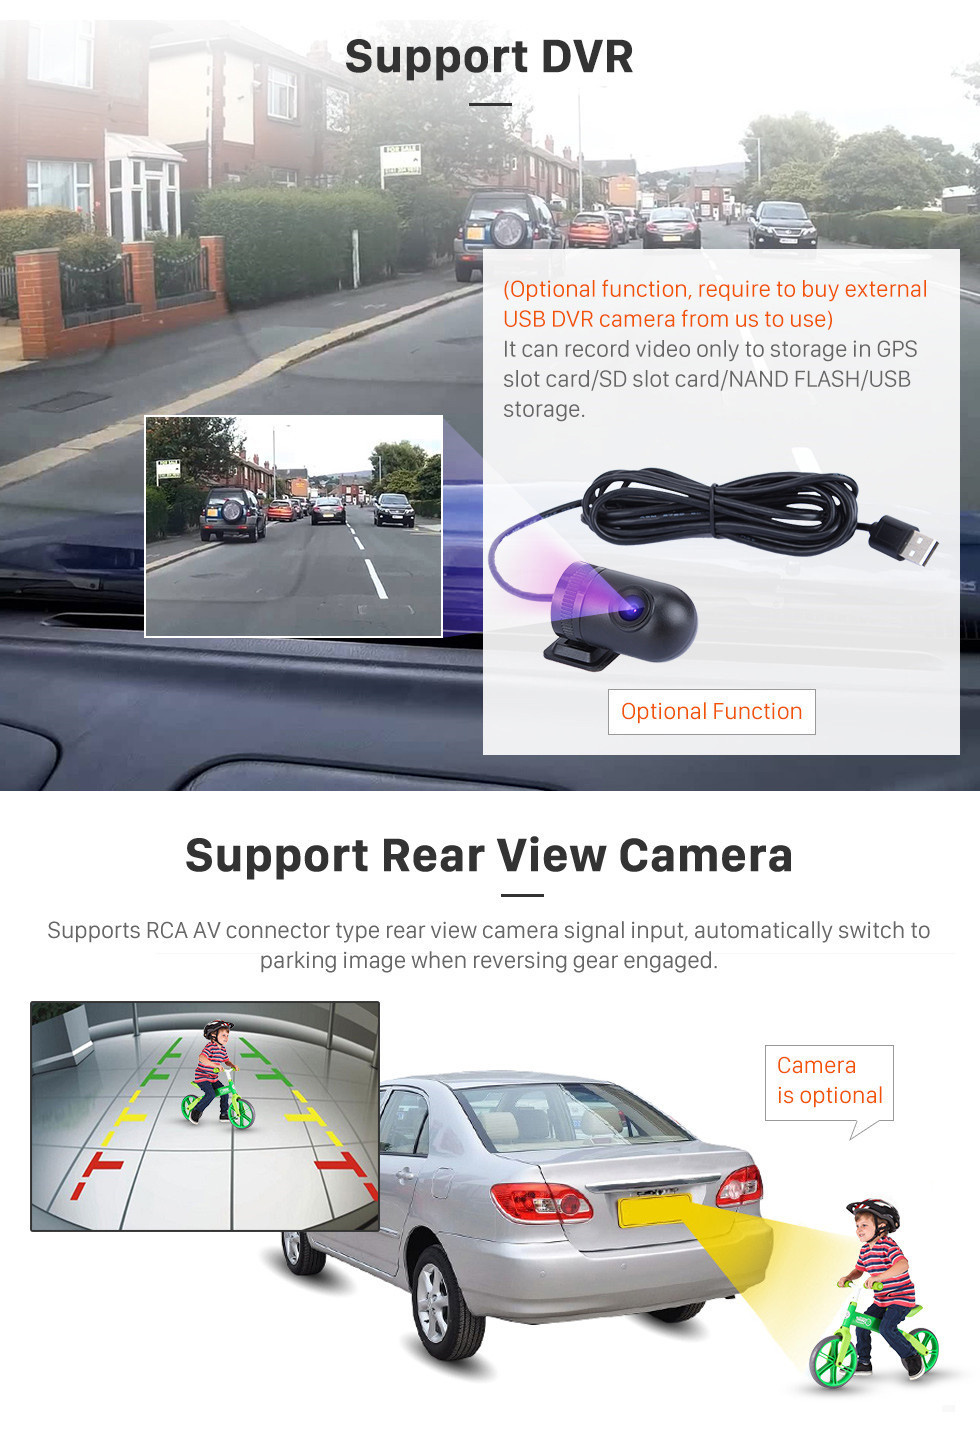 Seicane 10,1 pouces Android 11.0 Radio pour 2015-2018 Skoda Superb Bluetooth HD à écran tactile Navigation GPS soutien Carplay USB TPMS DAB + DVR